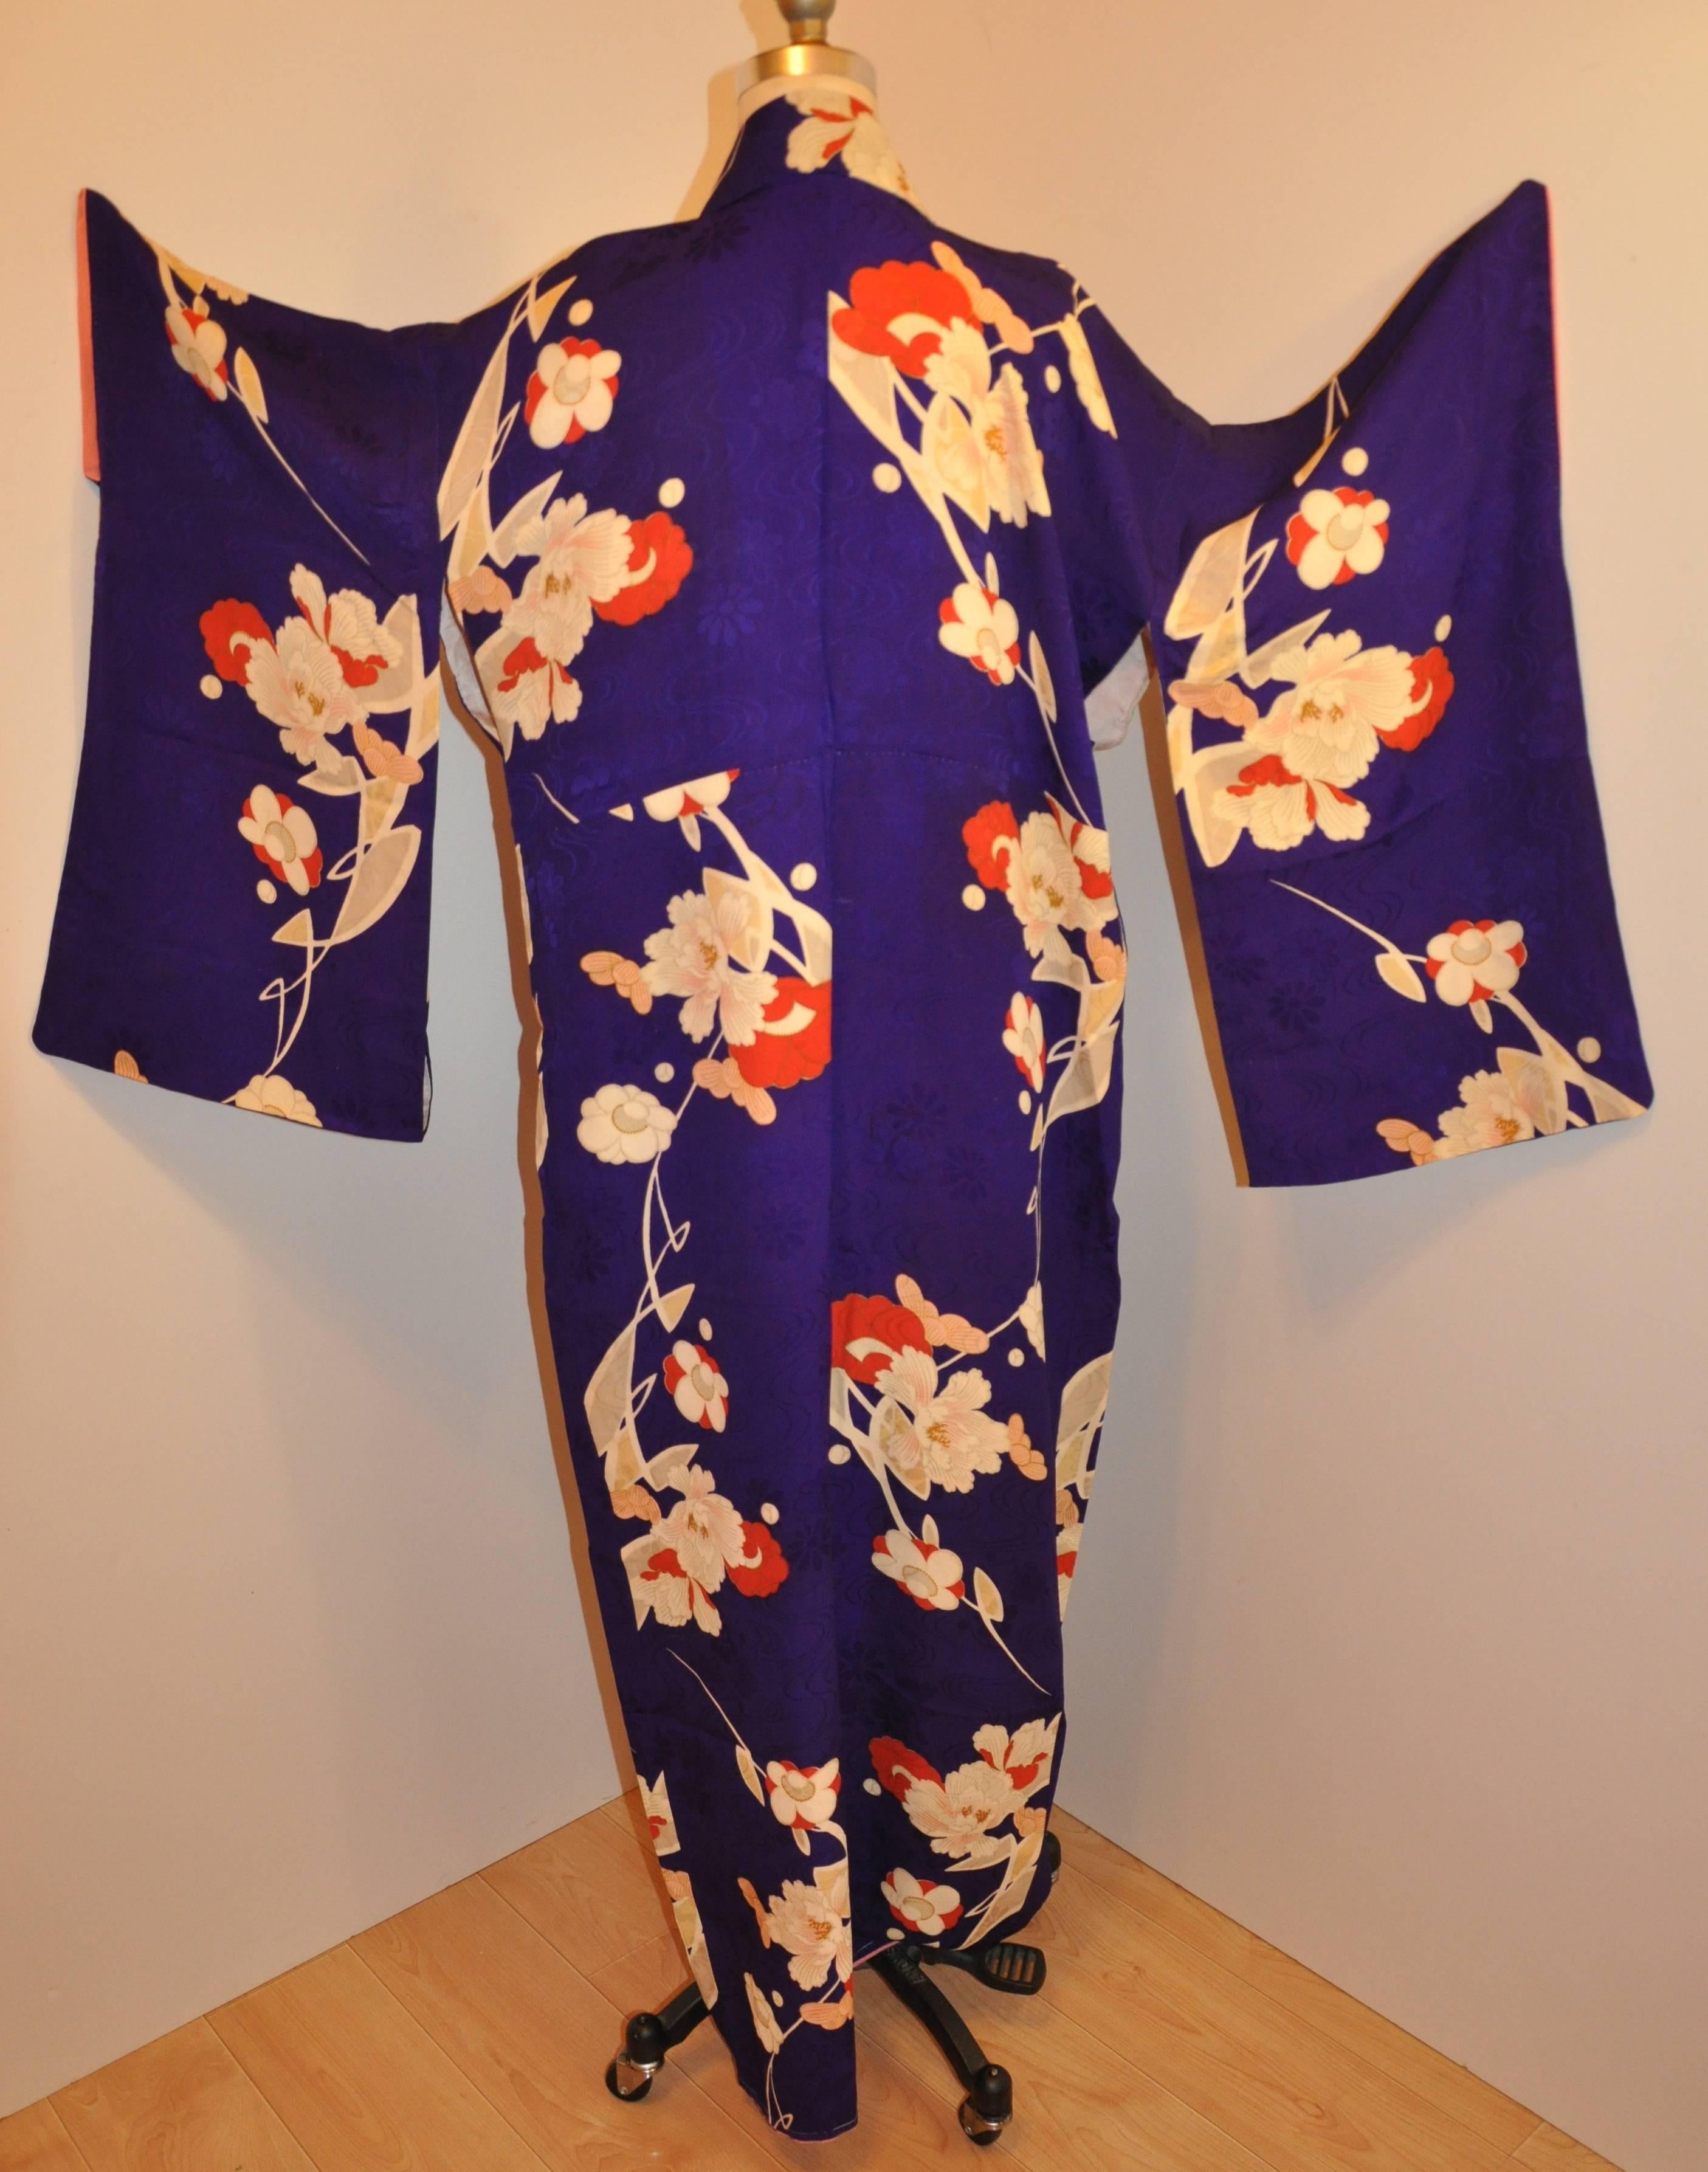      Diese wunderbar detaillierte lila Seide Kimono ersten hat lila Blumen mit dem lila Seide mit Multi-Farben von Blumen in seiner handgenähten japanischen Kimono akzentuiert. Die Länge misst 58